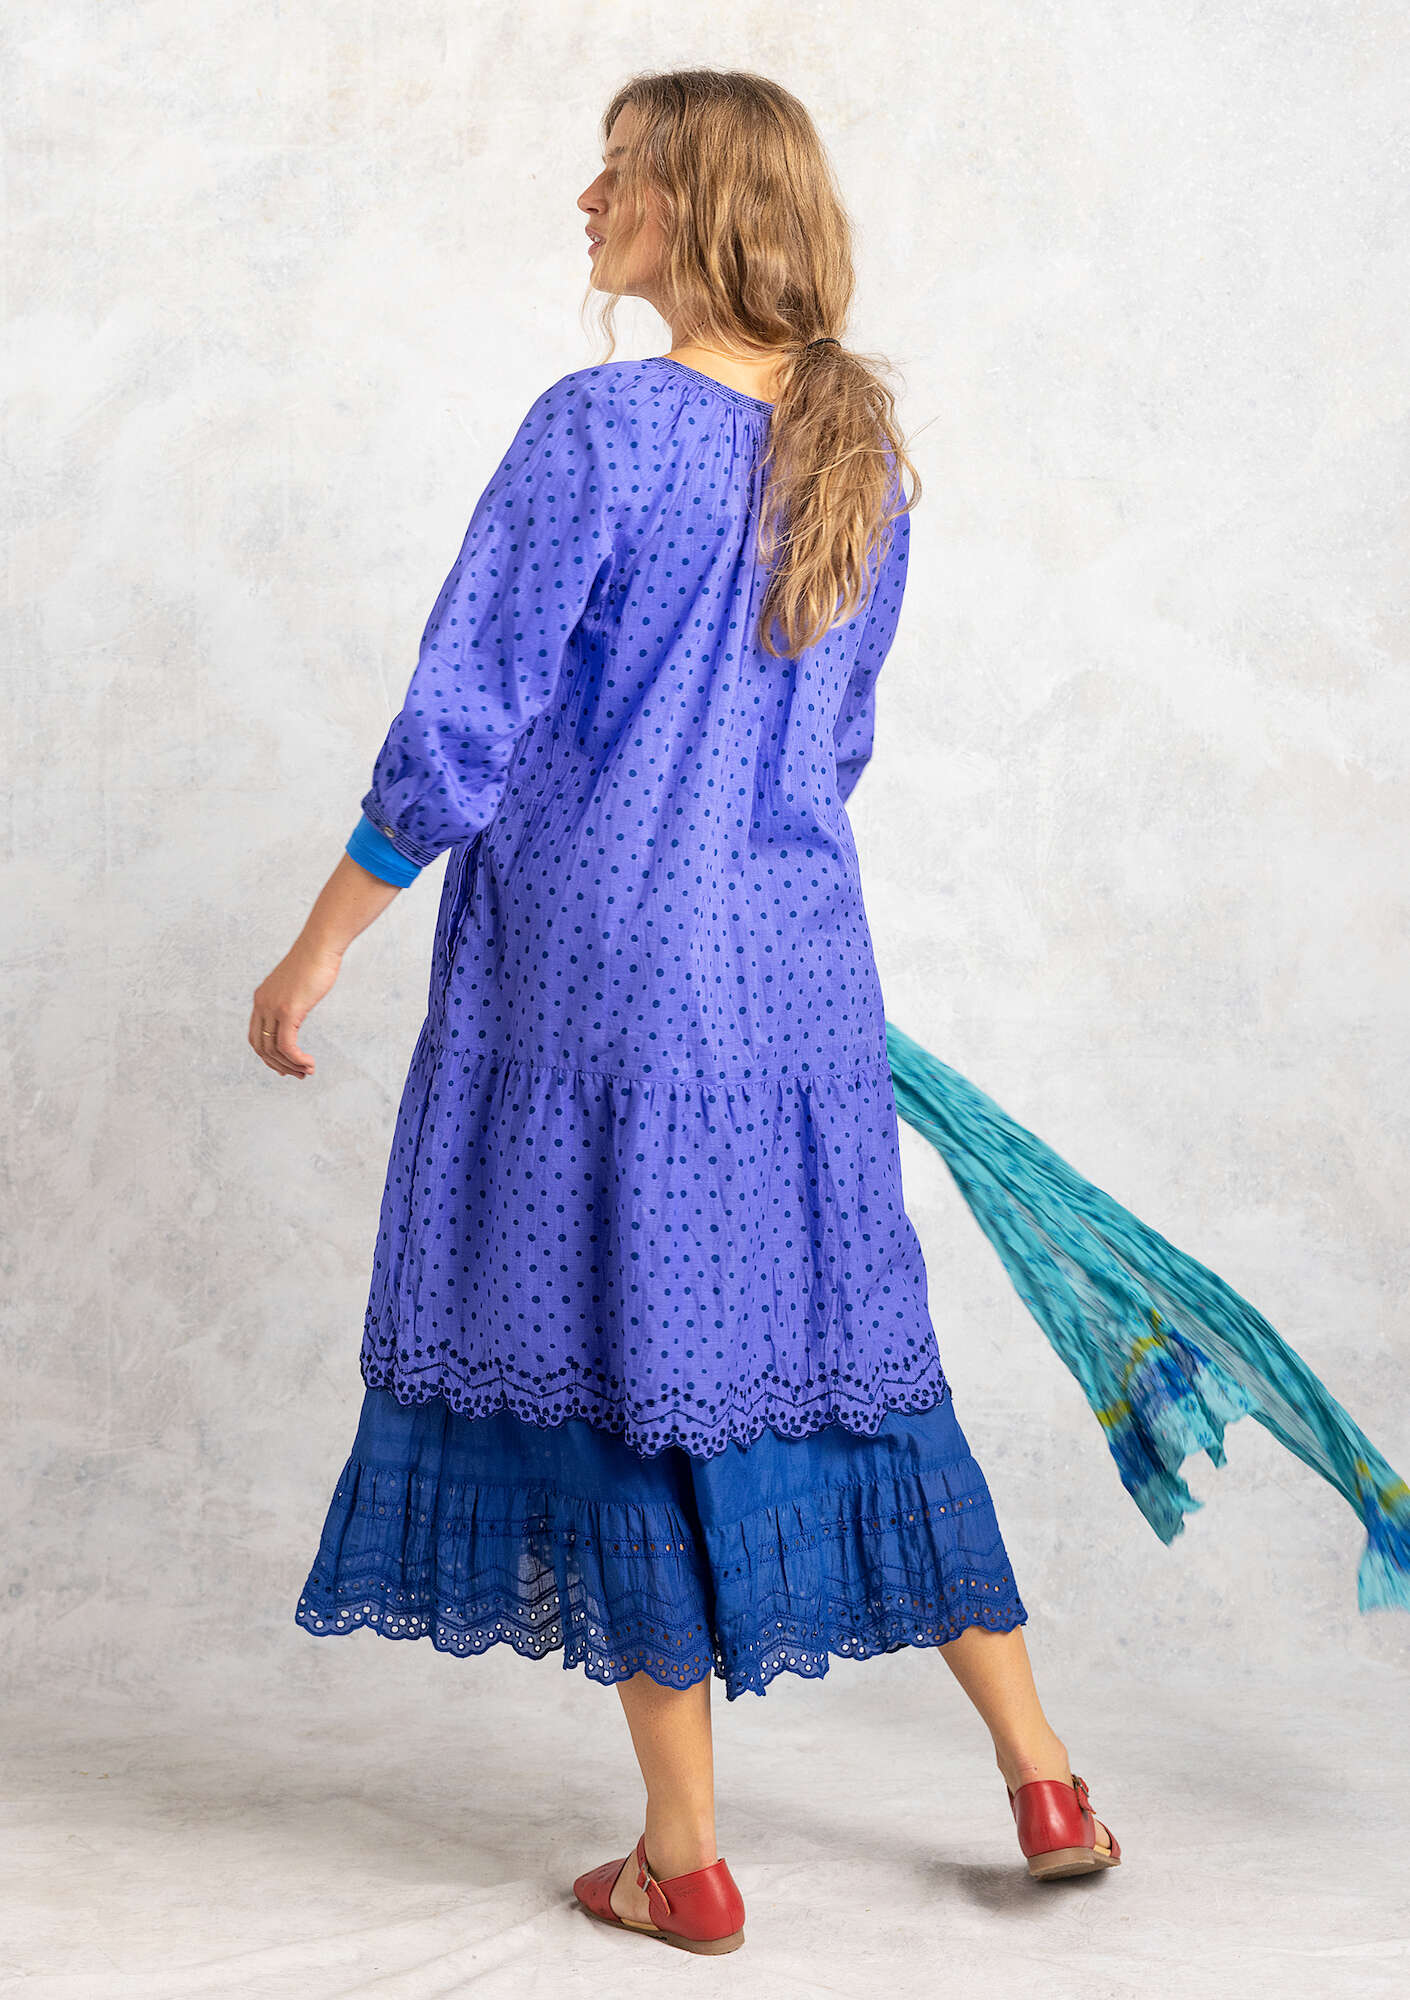 Vevd kjole «Lilly» i økologisk bomull blå lotus thumbnail